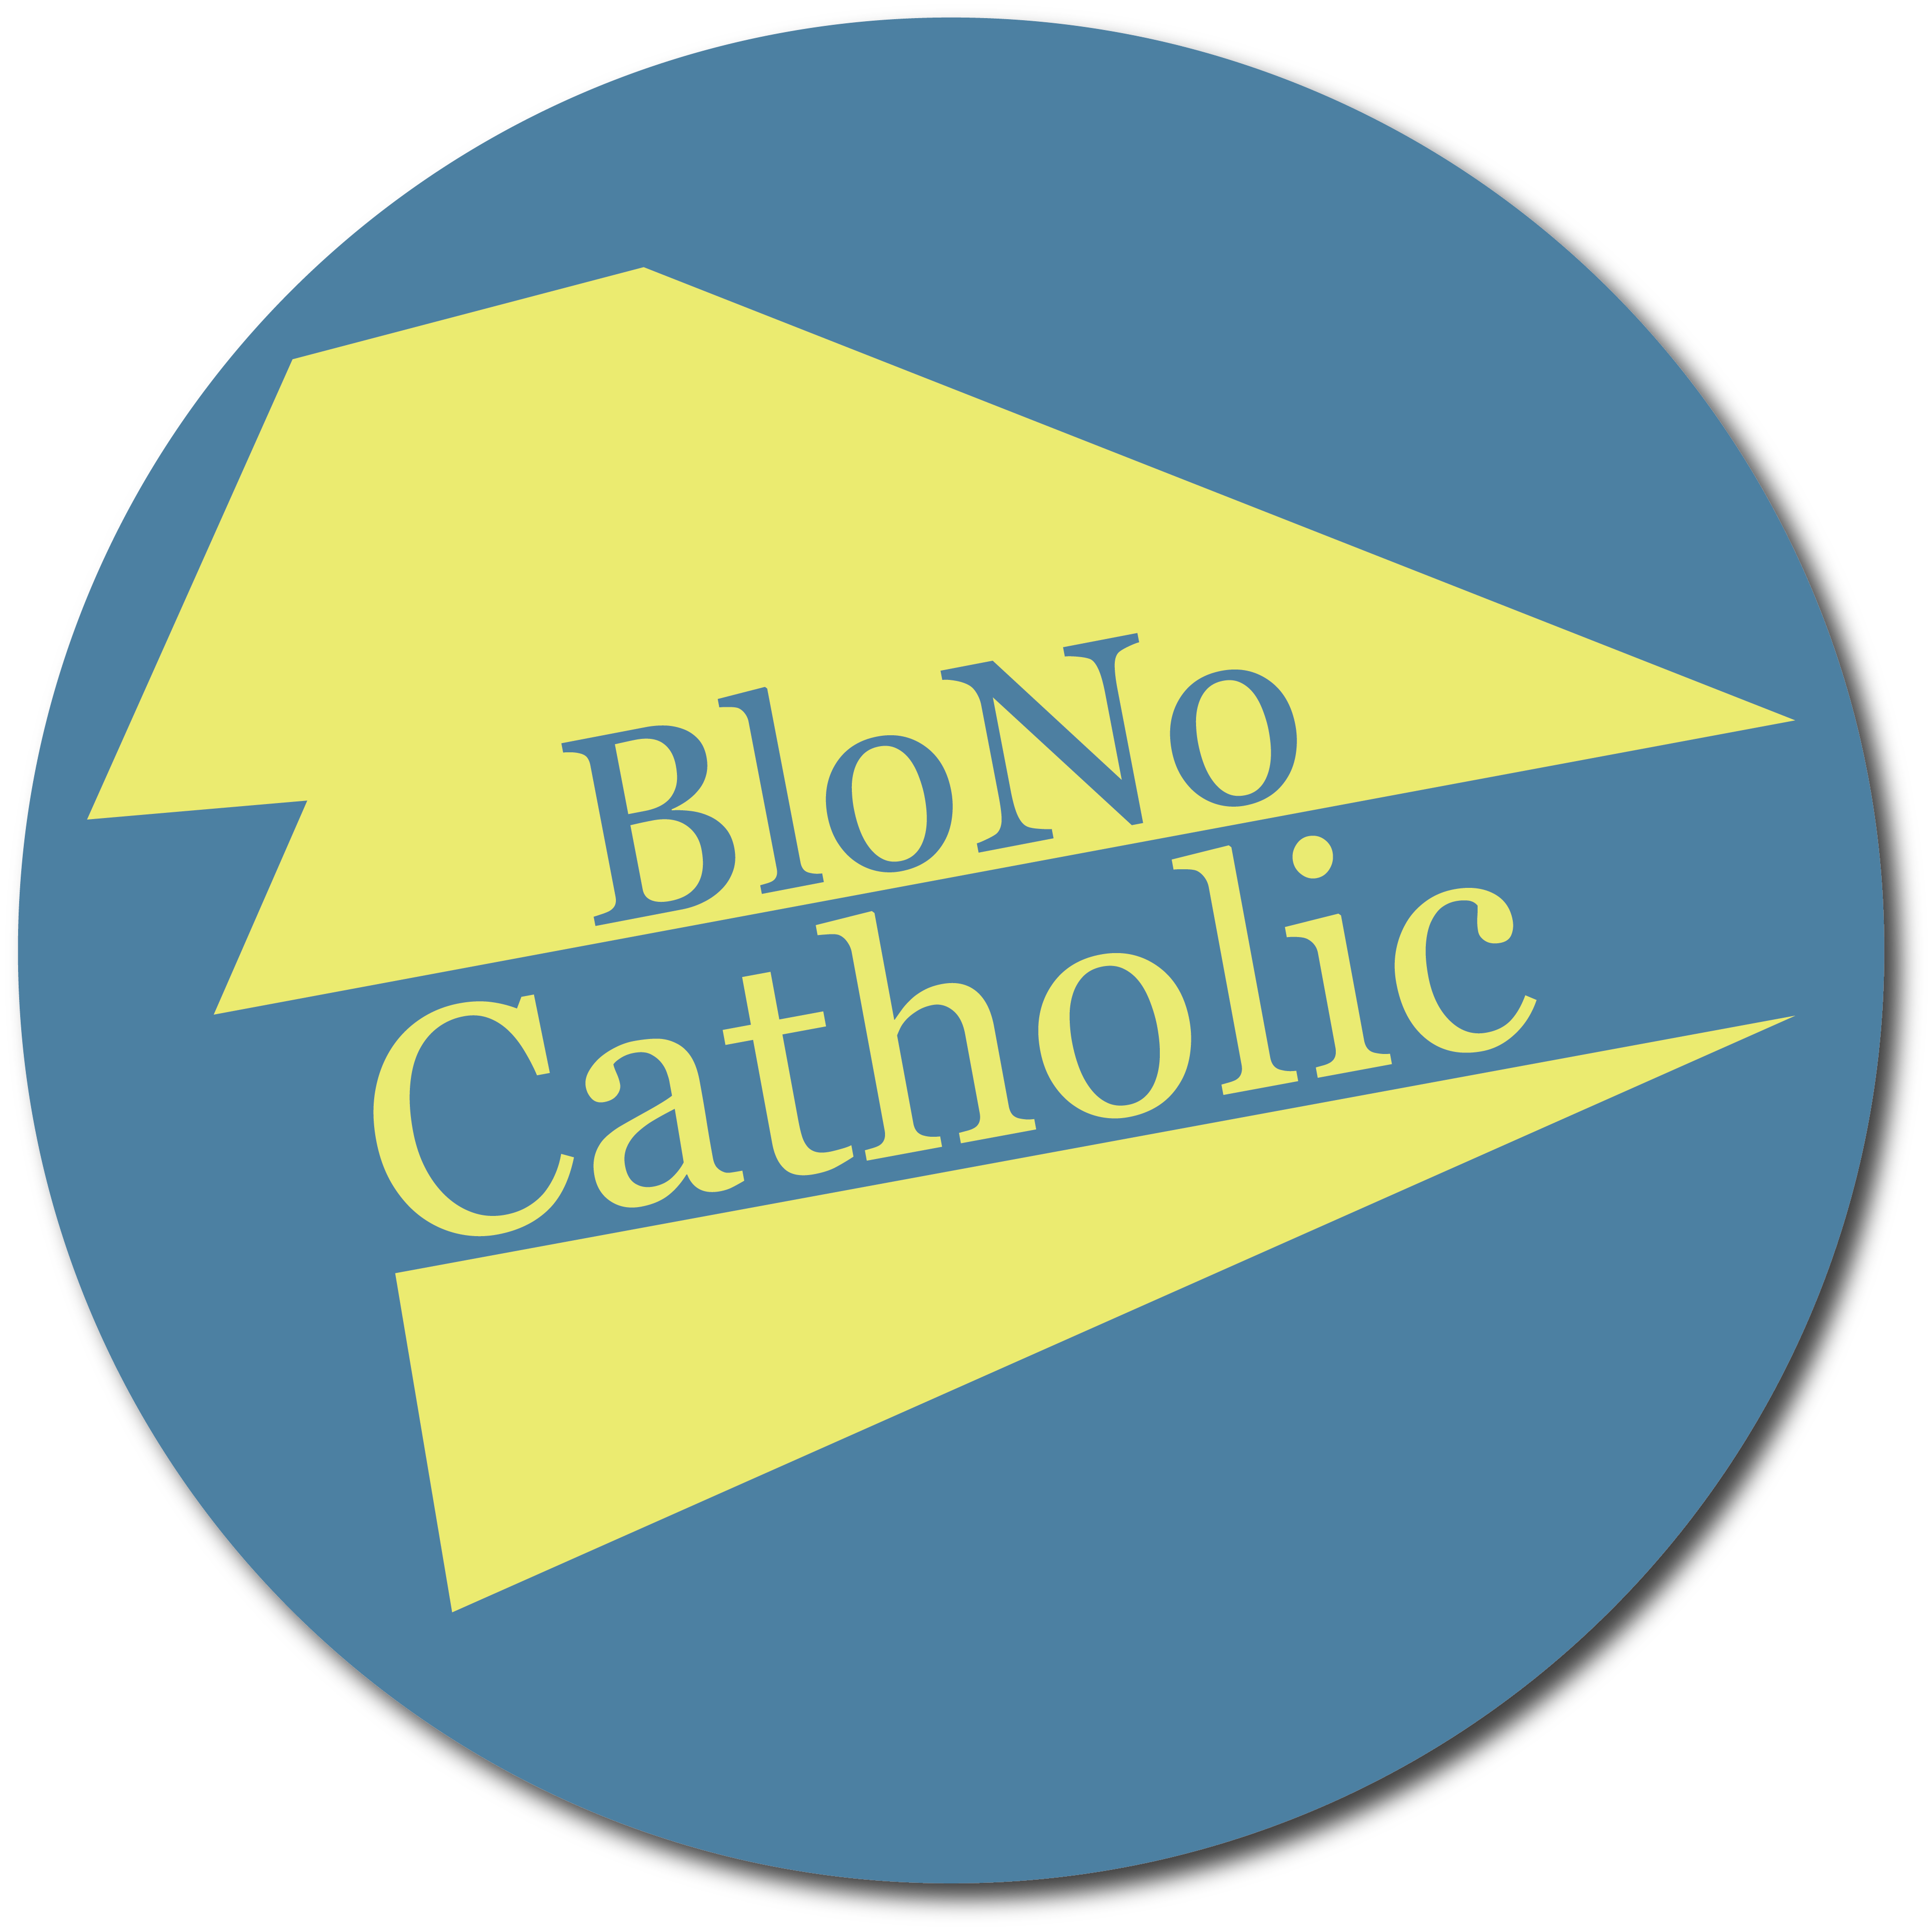 BloNo Catholic Logo